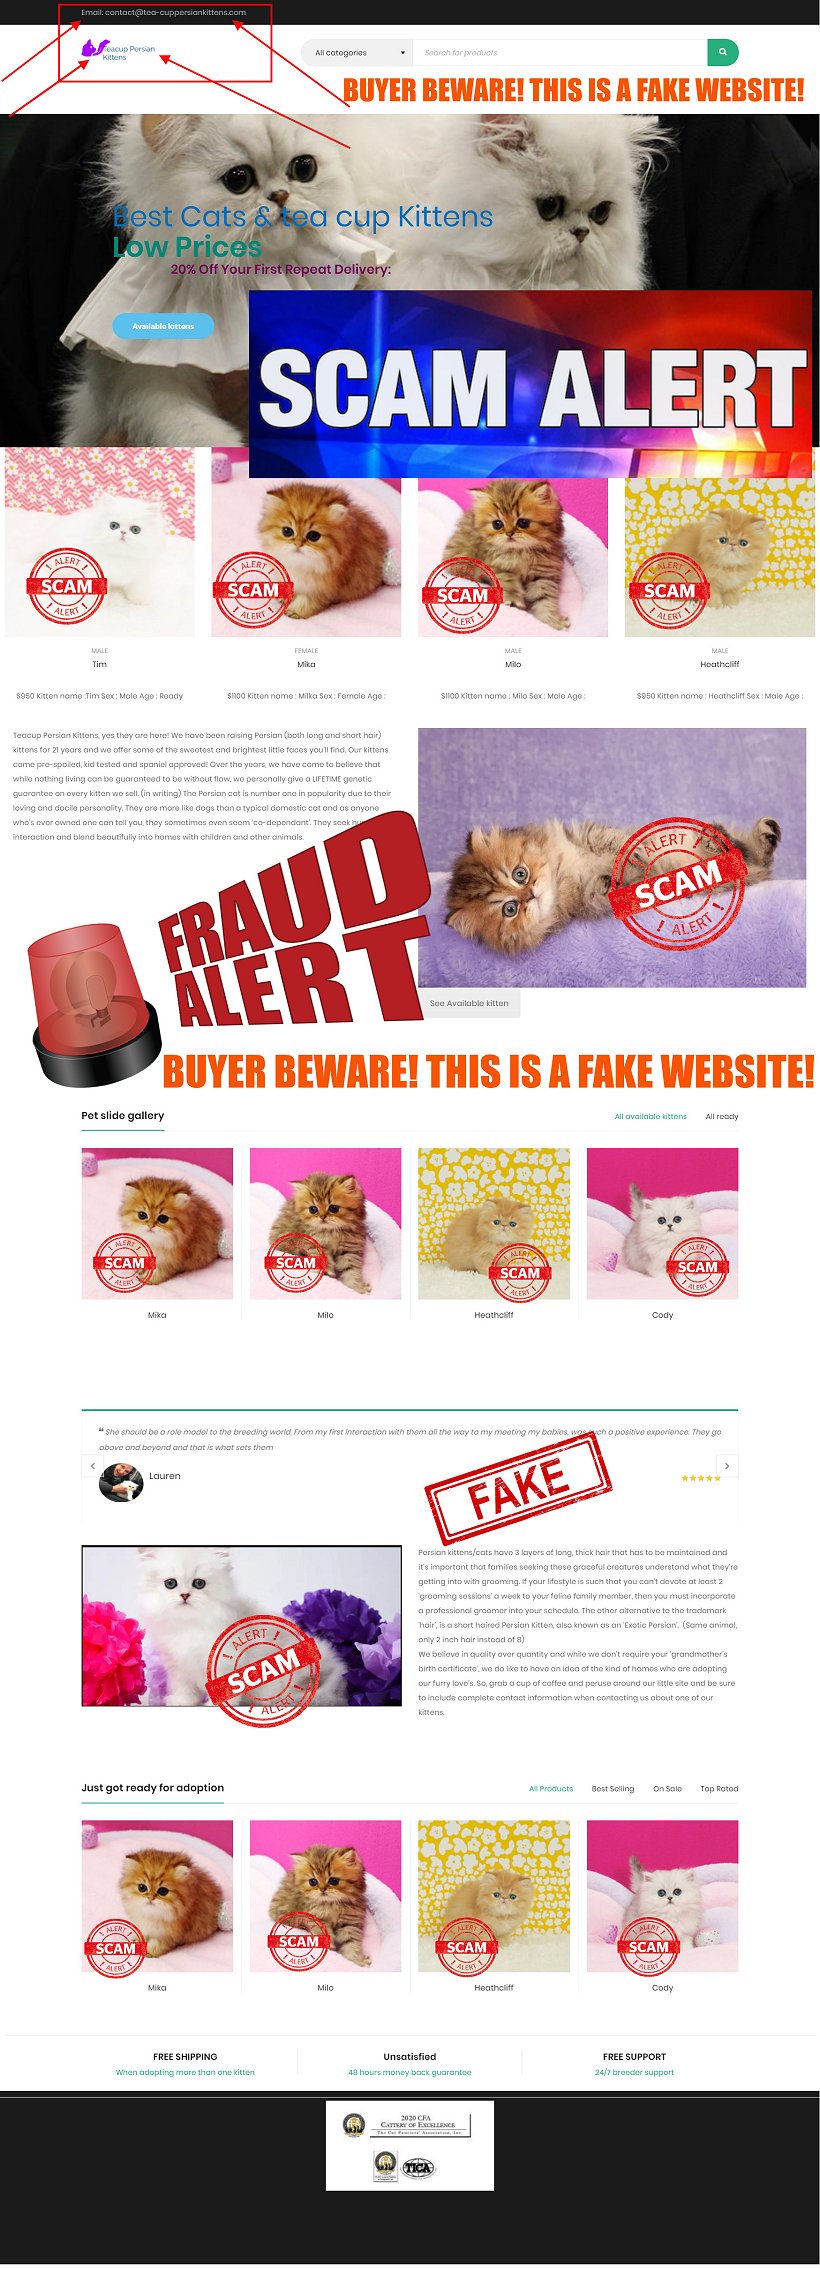 https://tea-cuppersiankittens.com/ is a Scam Site - Buyer Beware!!